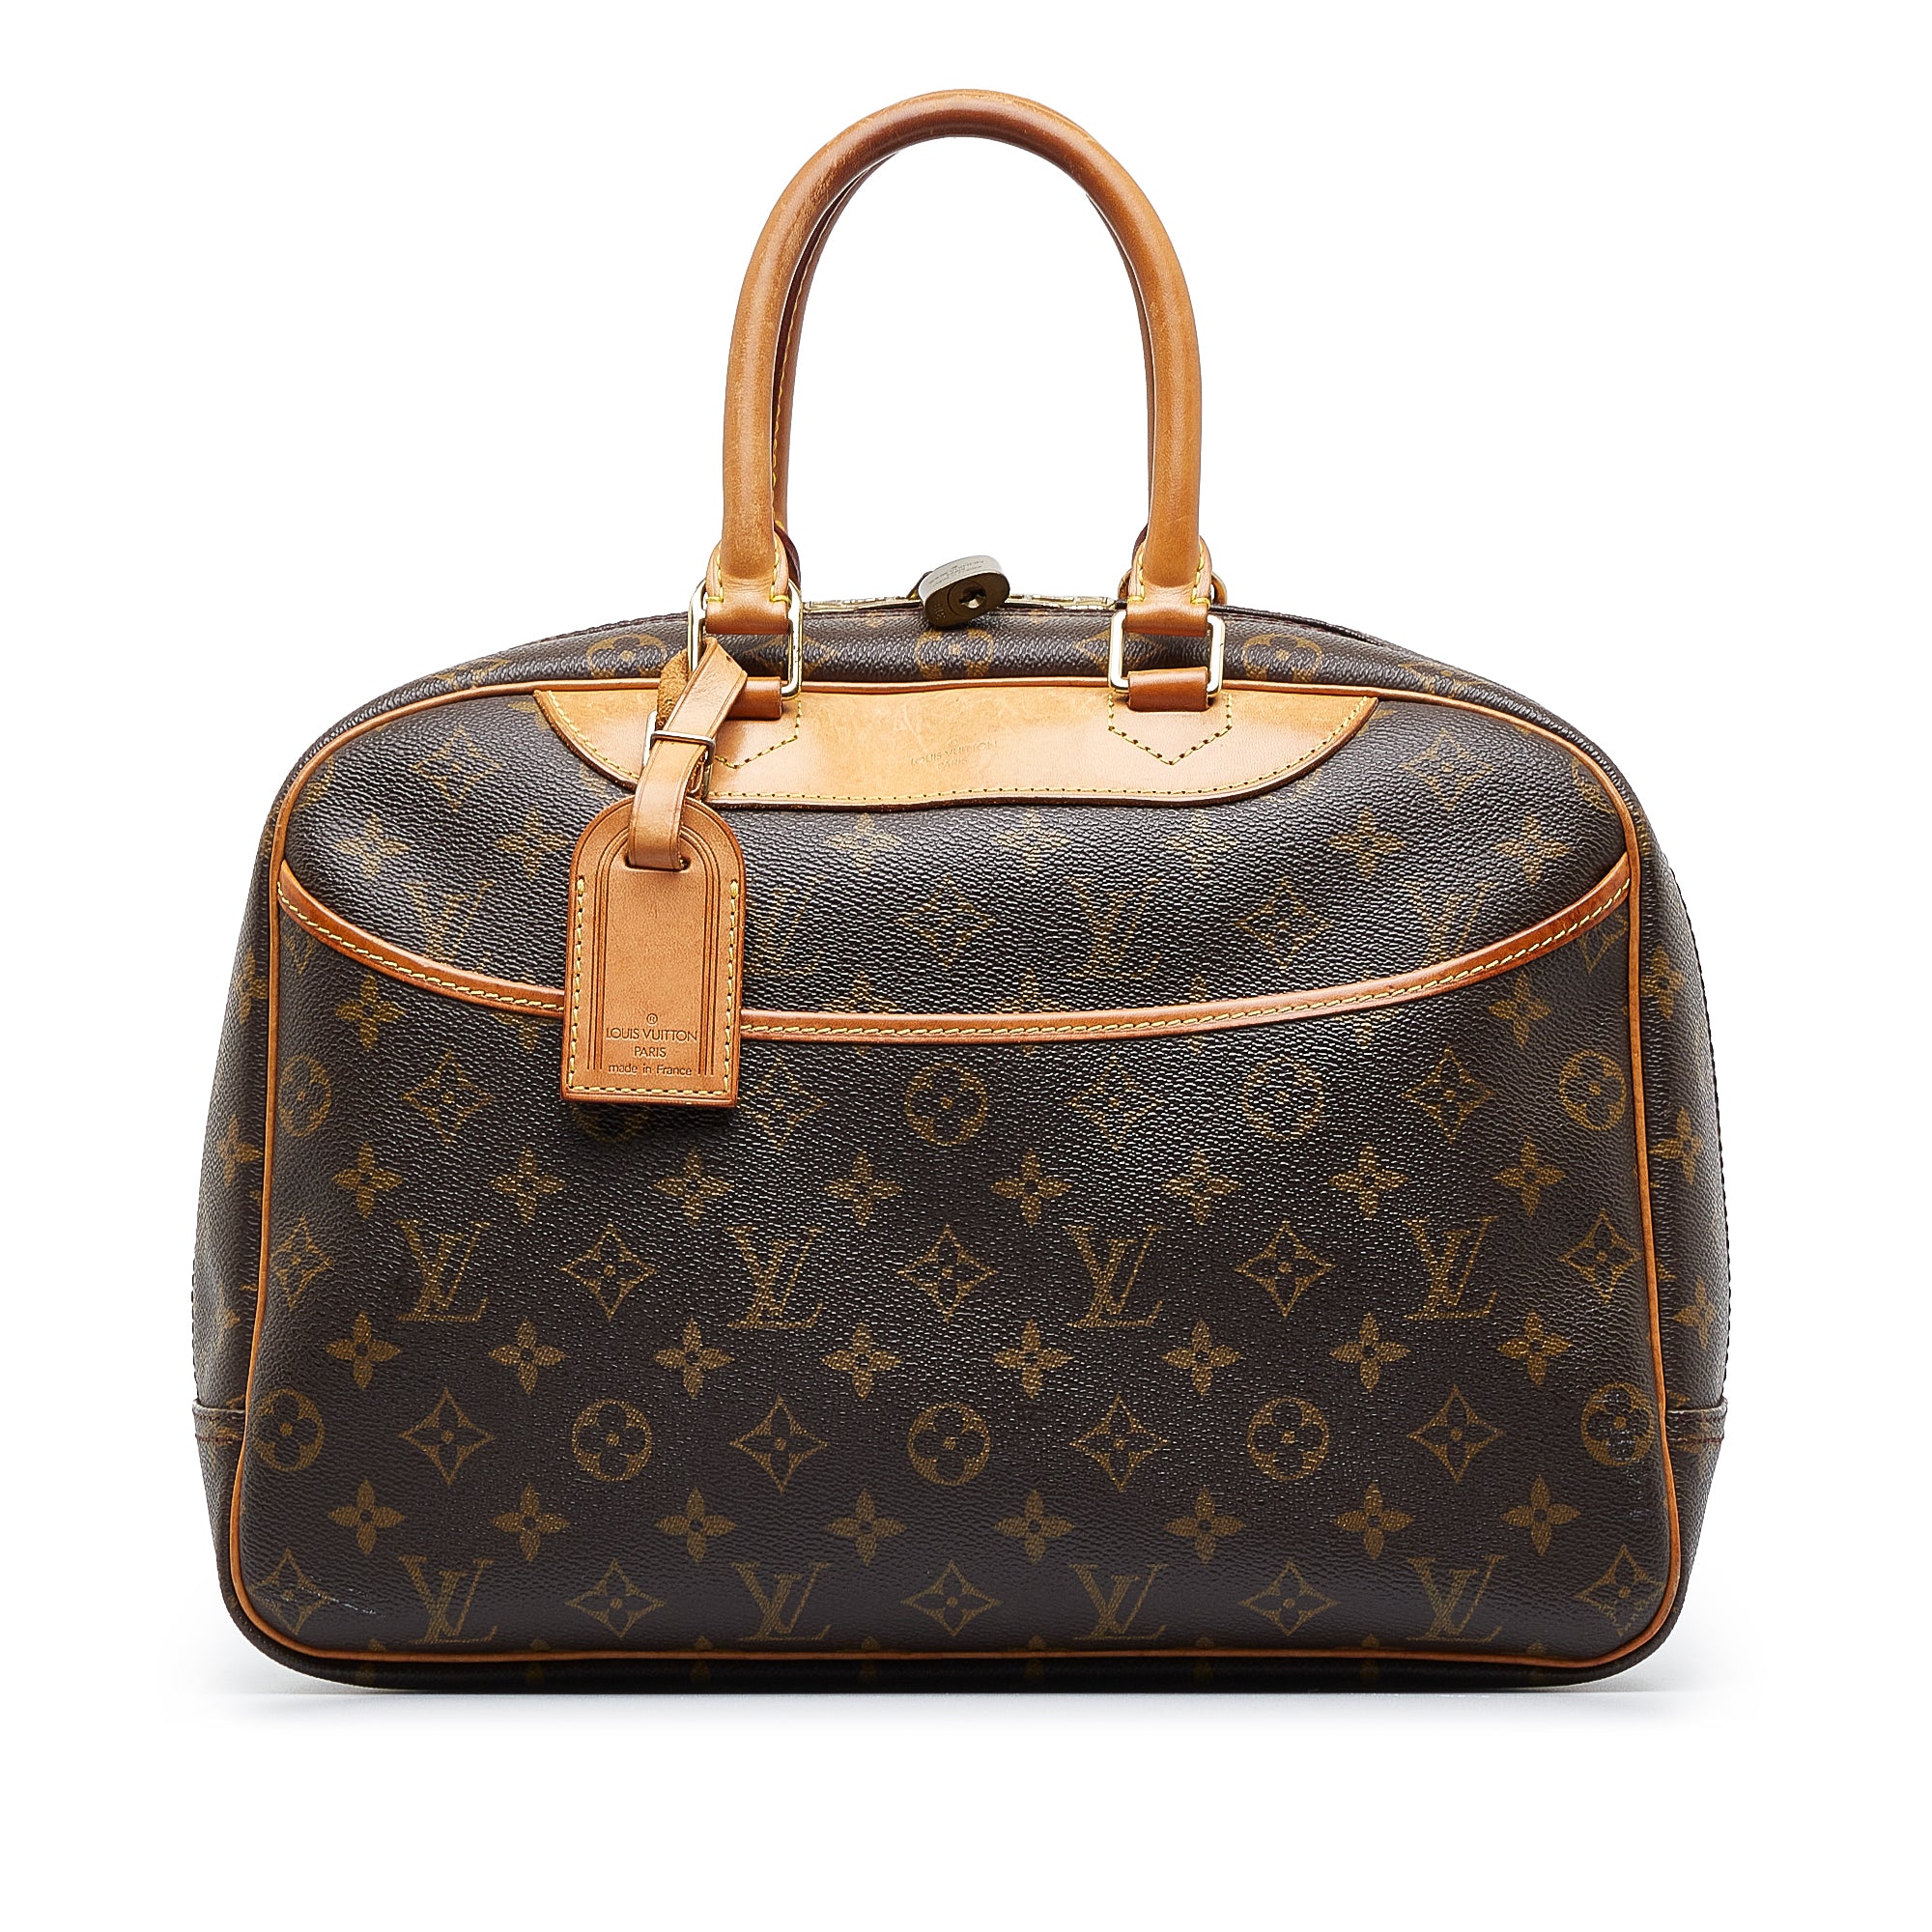 Authentic Louis Vuitton Deauville Hand bag M47270  Louis vuitton  deauville, Authentic louis vuitton, Louis vuitton bag